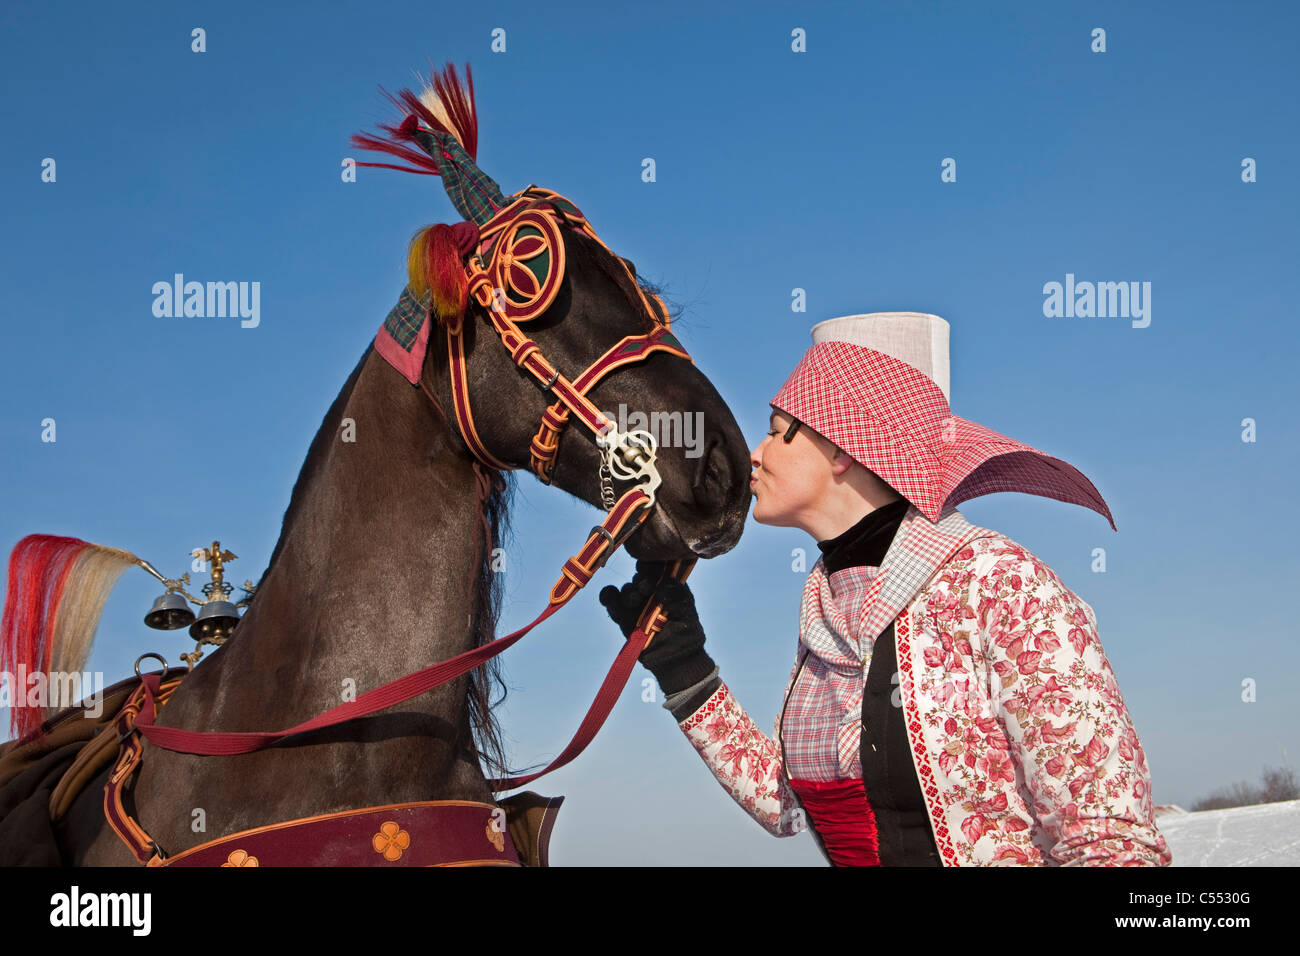 Les Pays-Bas, Hindeloopen, femme en costume traditionnel donnant baiser sur le nez du cheval frison. Banque D'Images